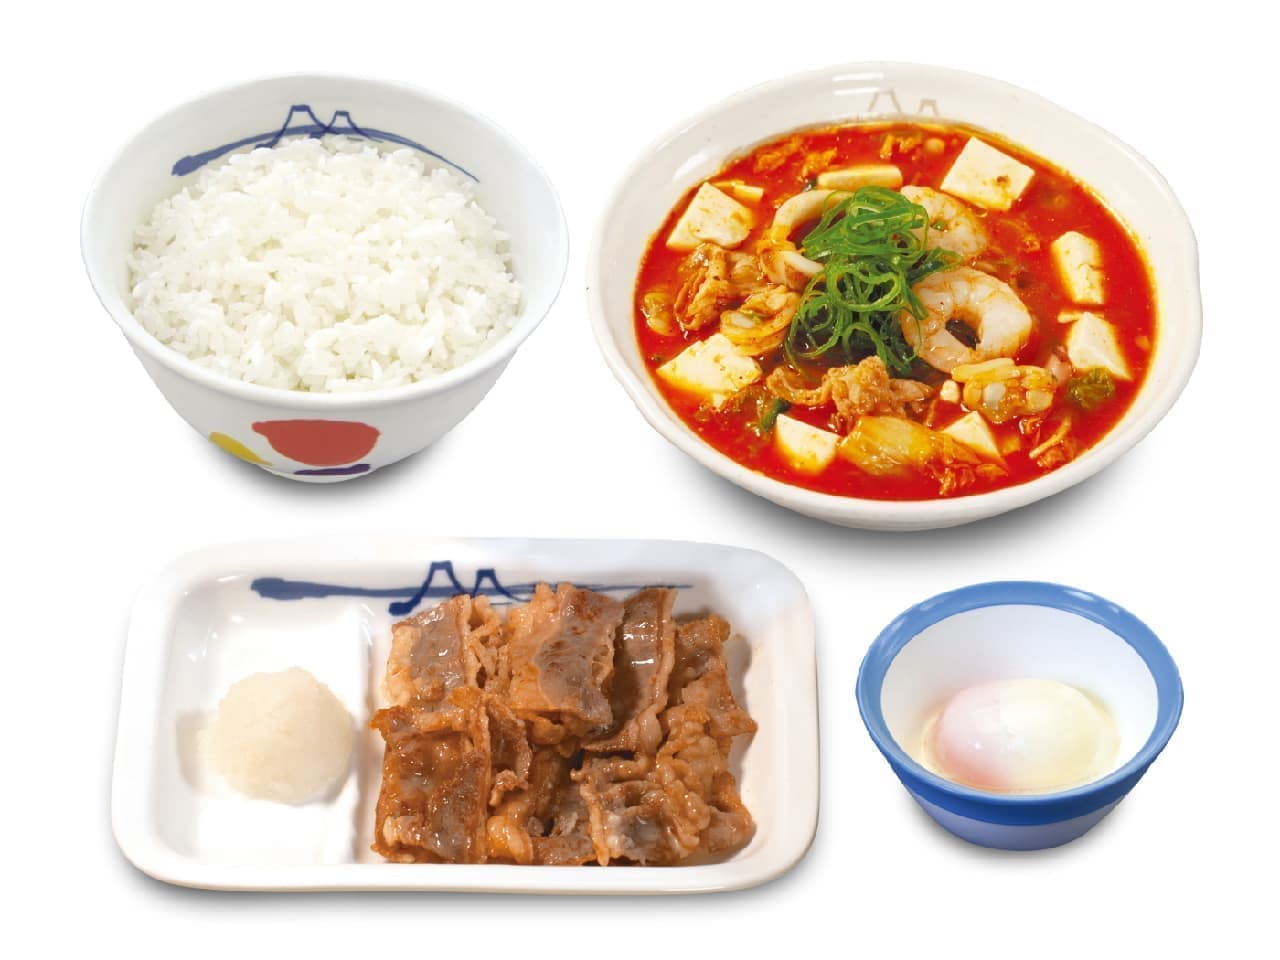 Matsuya "Seafood tofu kimchi jjigae kalbi yakiniku set" with half-boiled egg